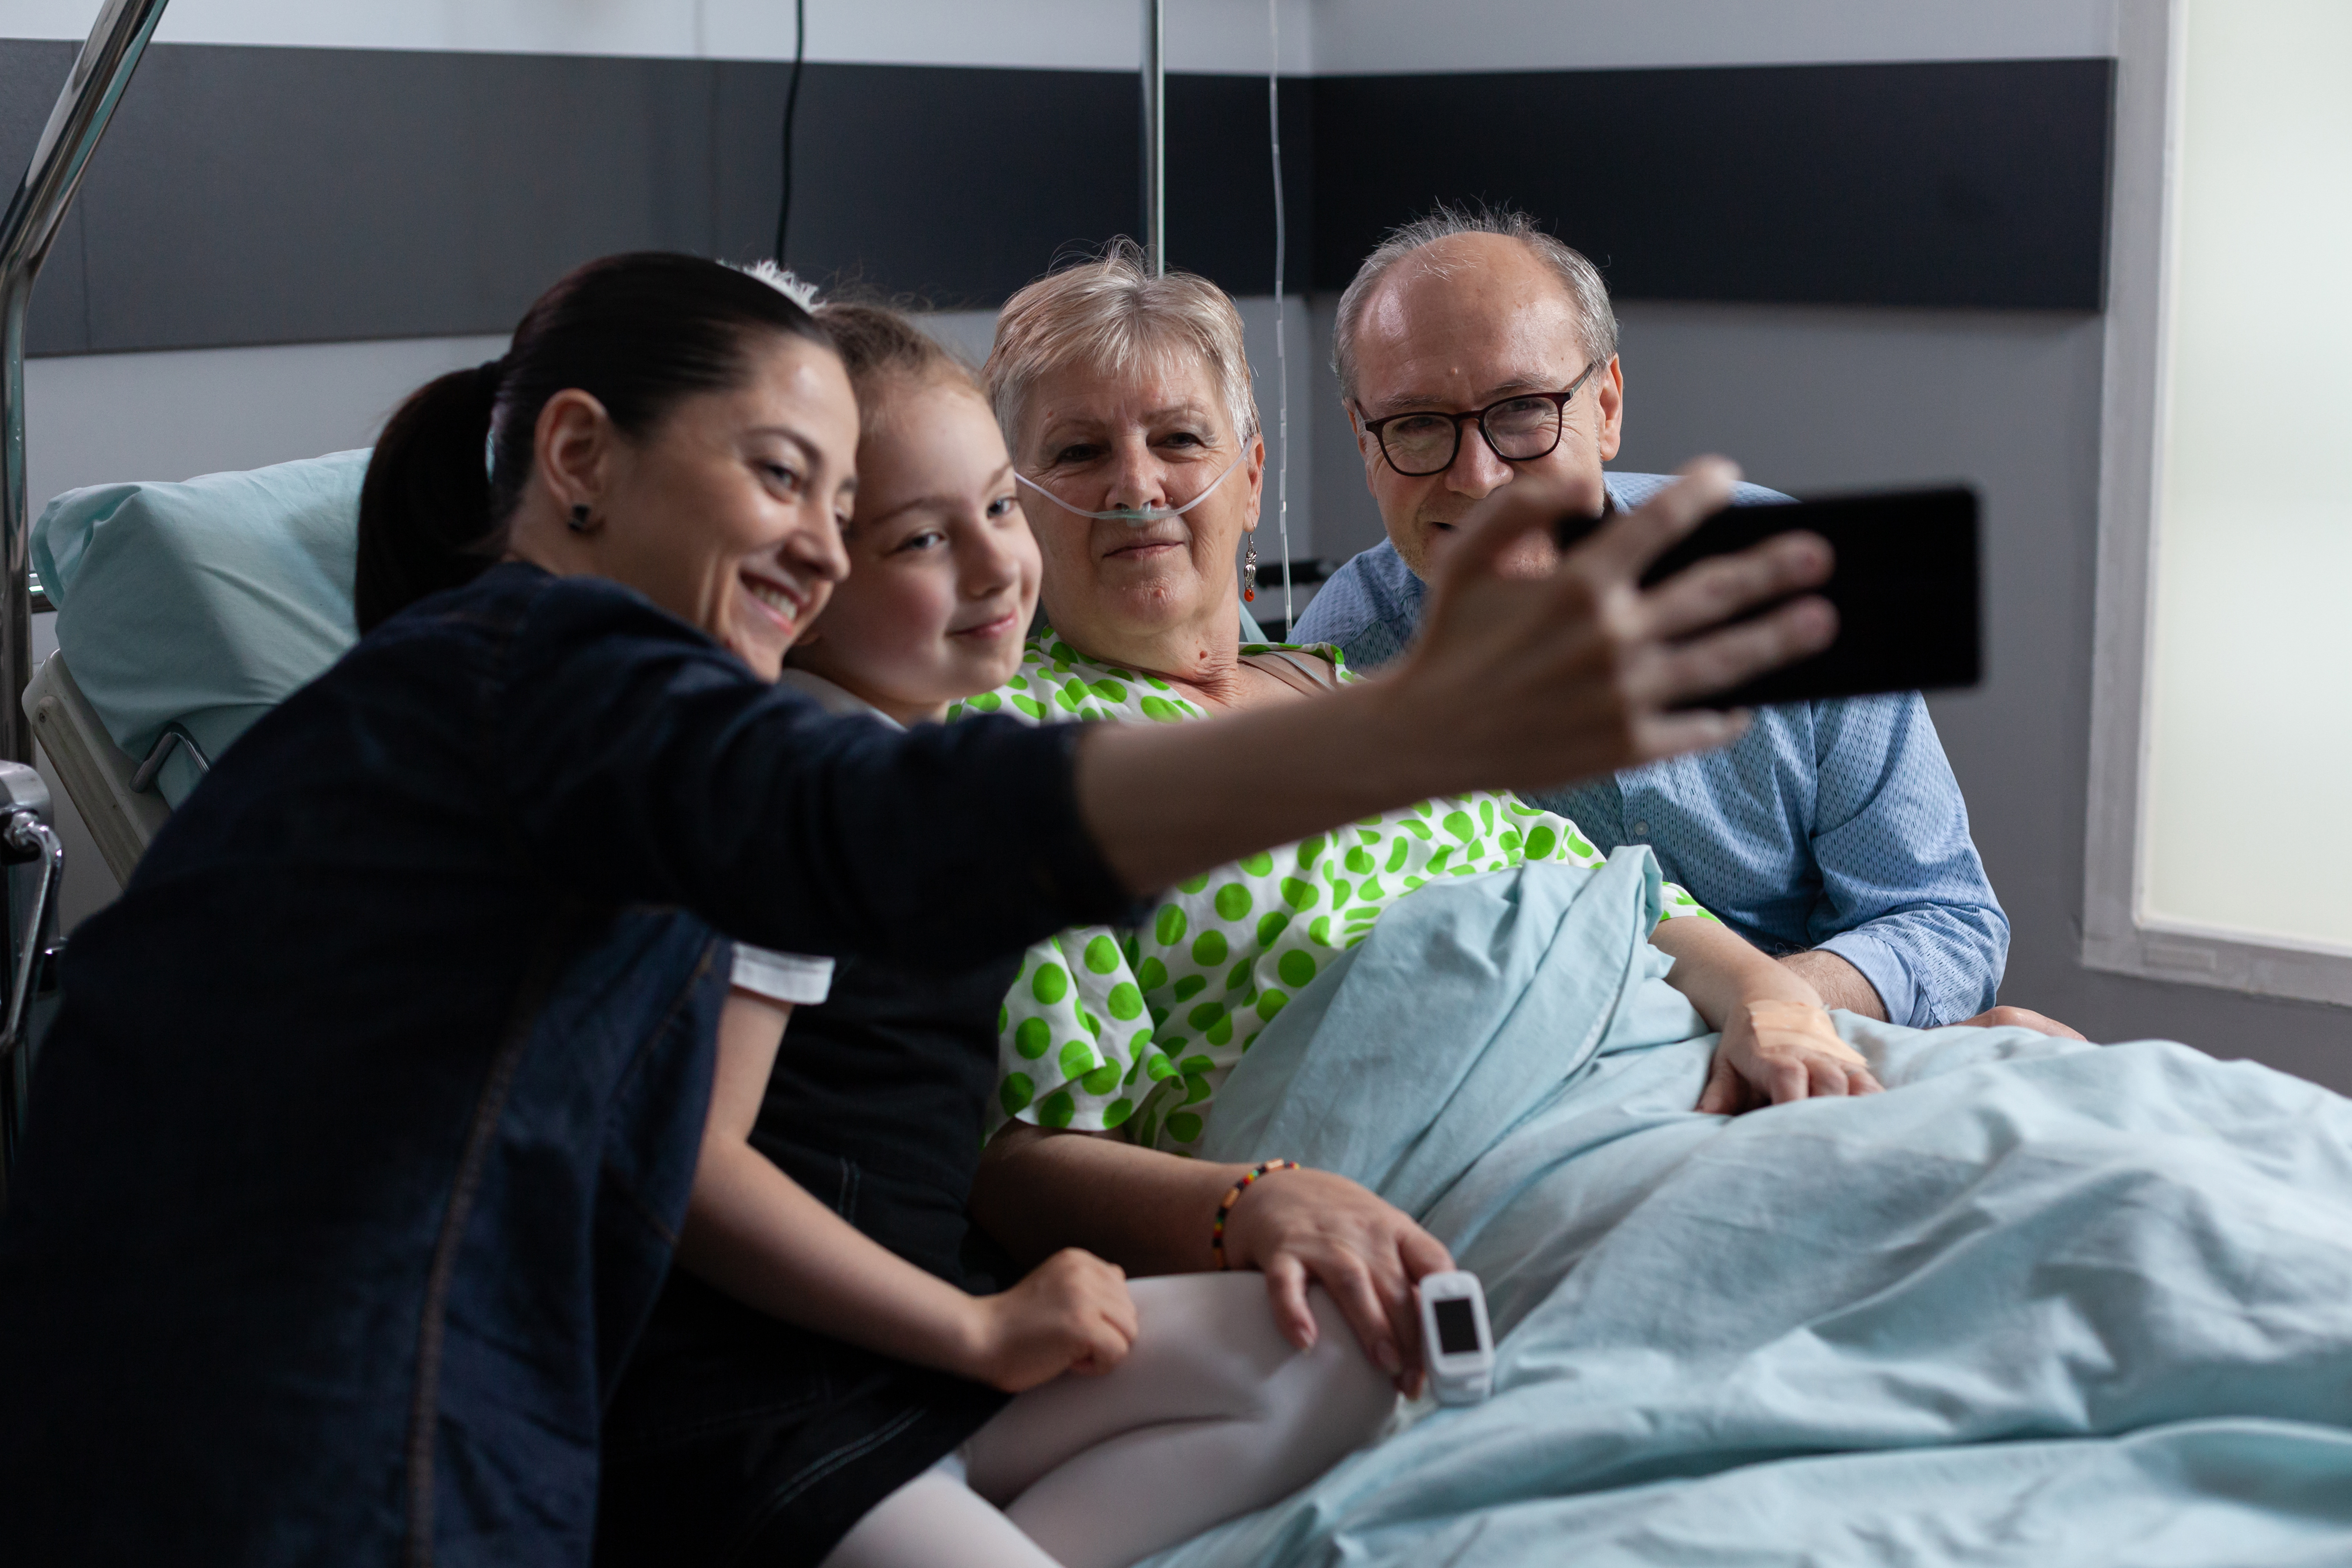 Elderly patient smiling for selfie alongside husband, daughter, granddaughter in older people medical clinic observation room.